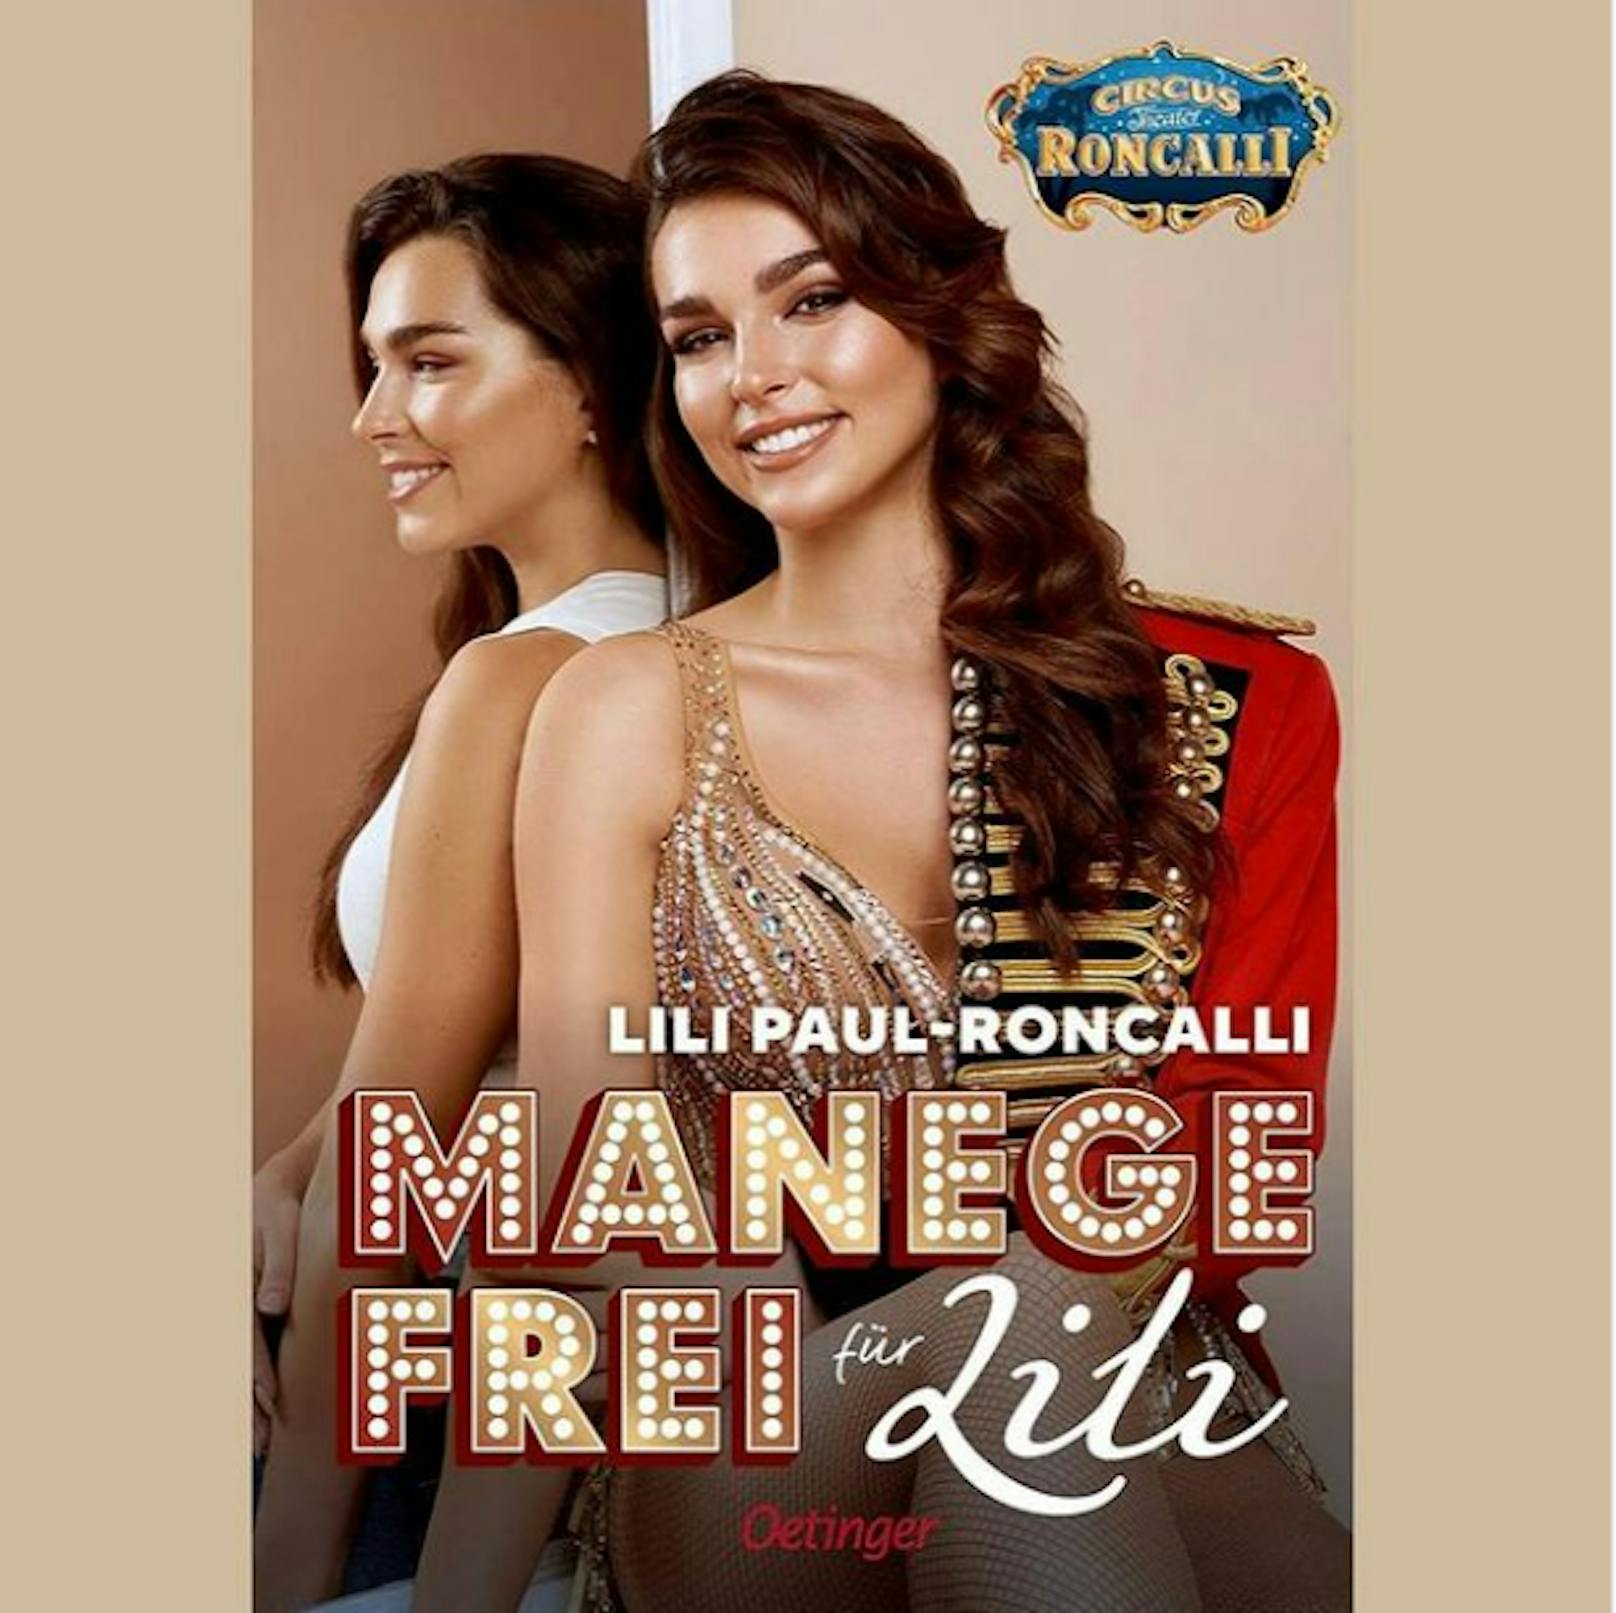 Lili Paul-Roncalli – jetzt kommt ihr erstes Kinderbuch